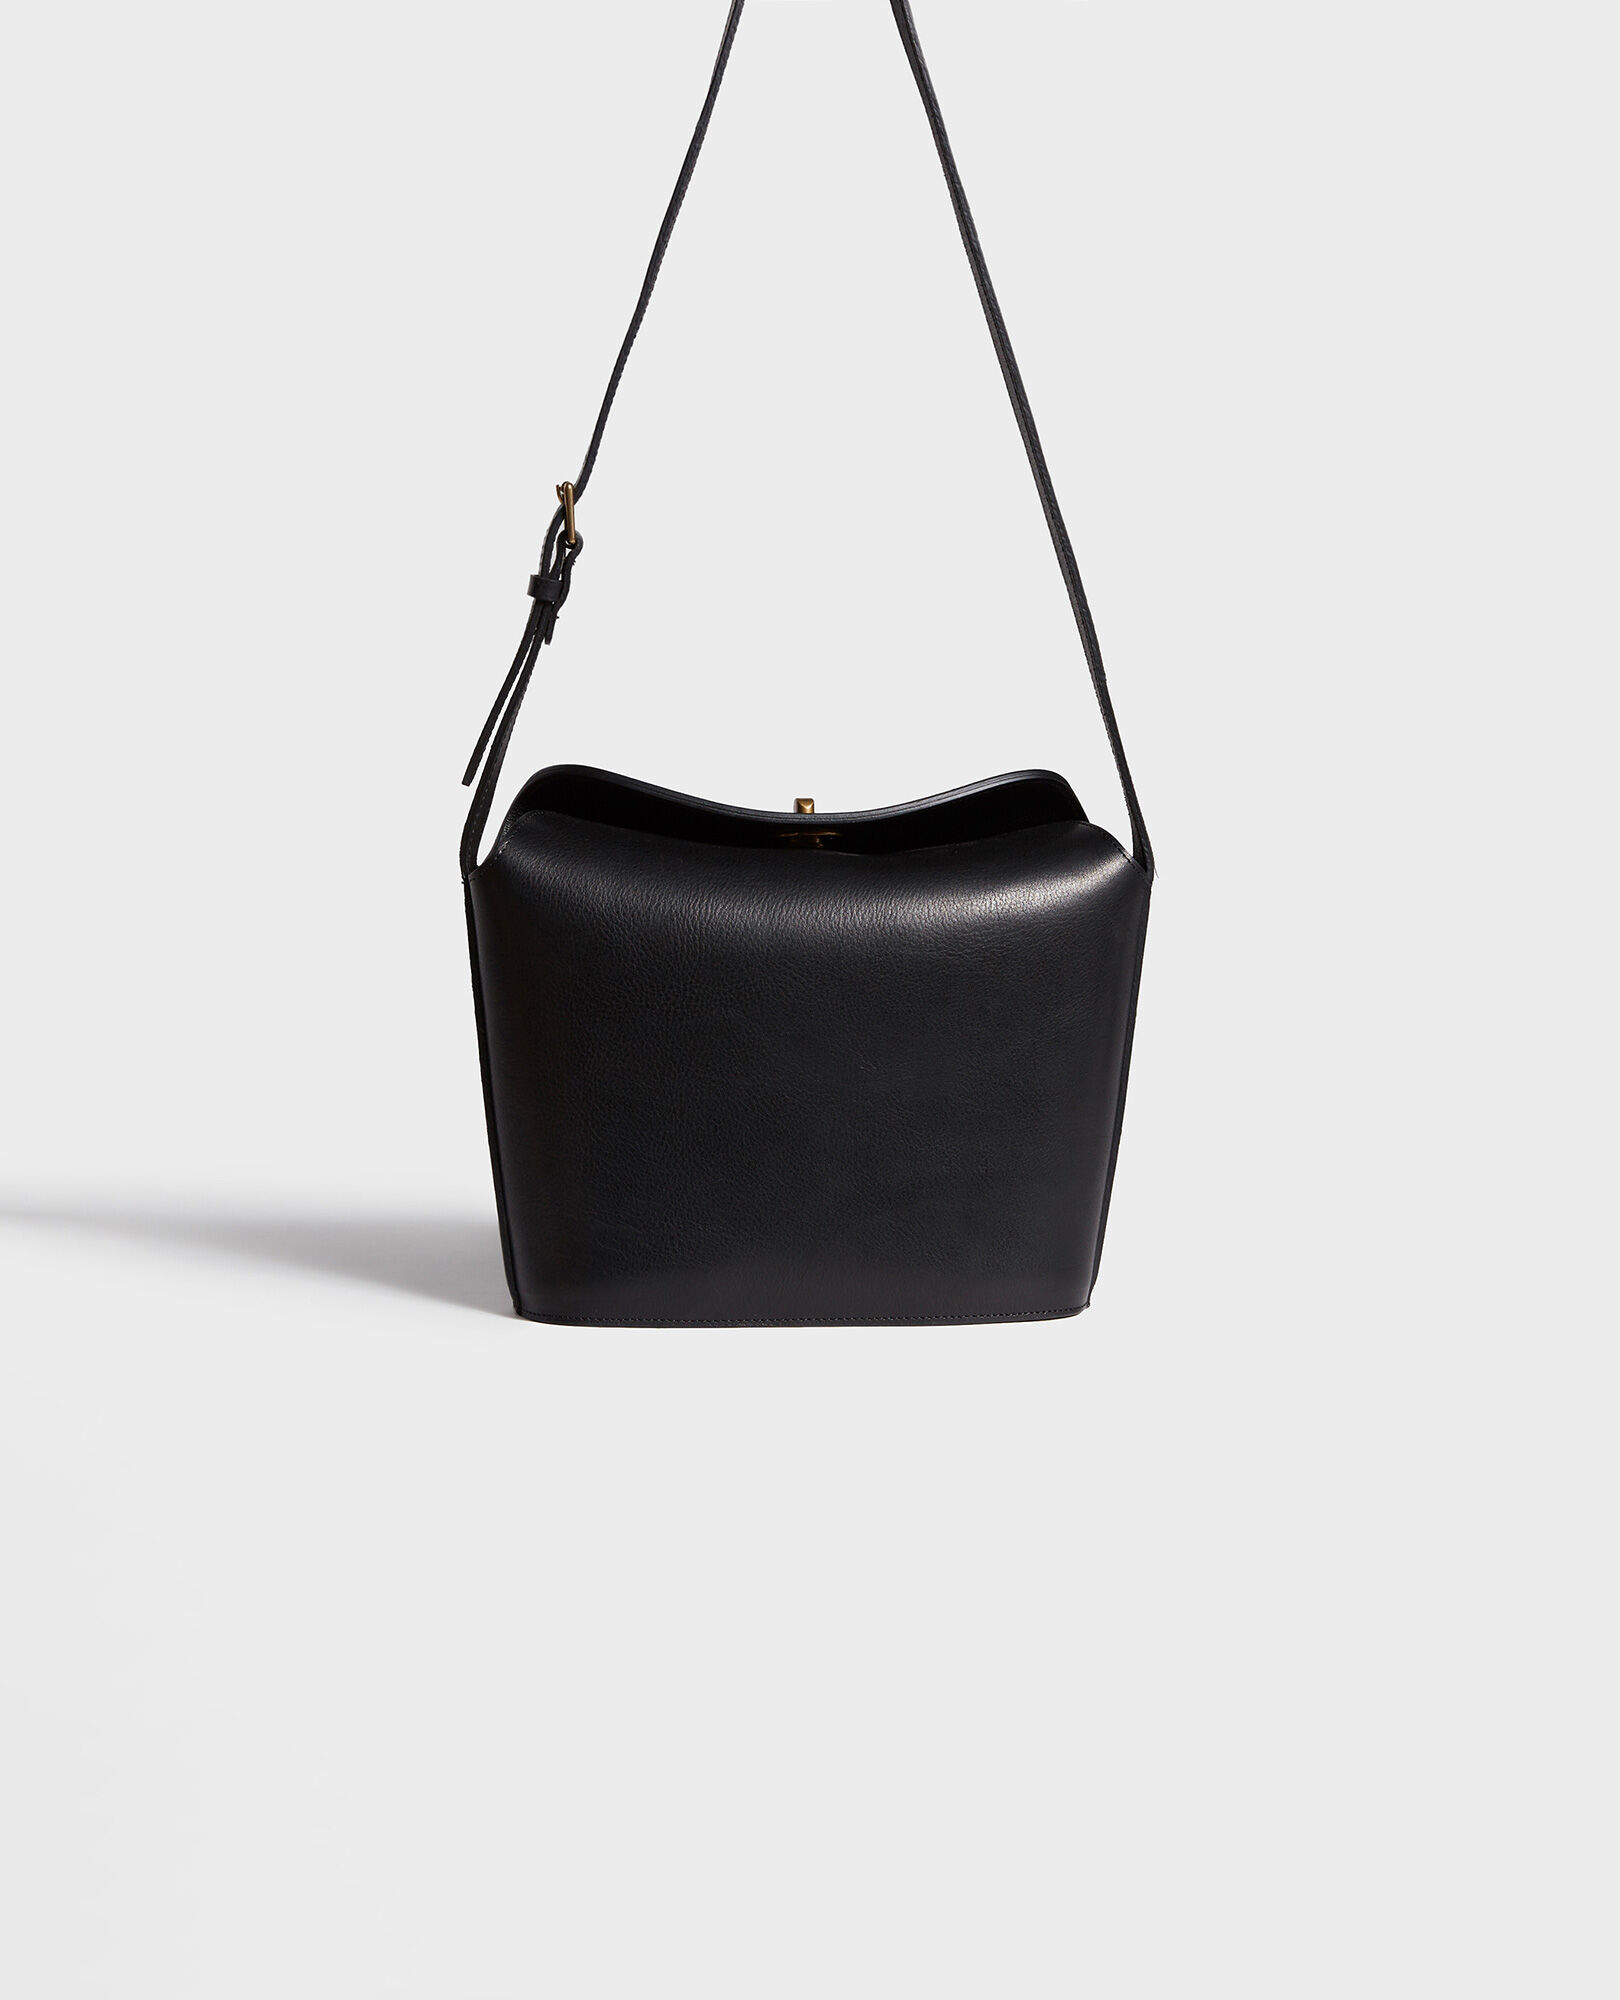  Leather handbag with short shoulder strap Black beauty Lidylle